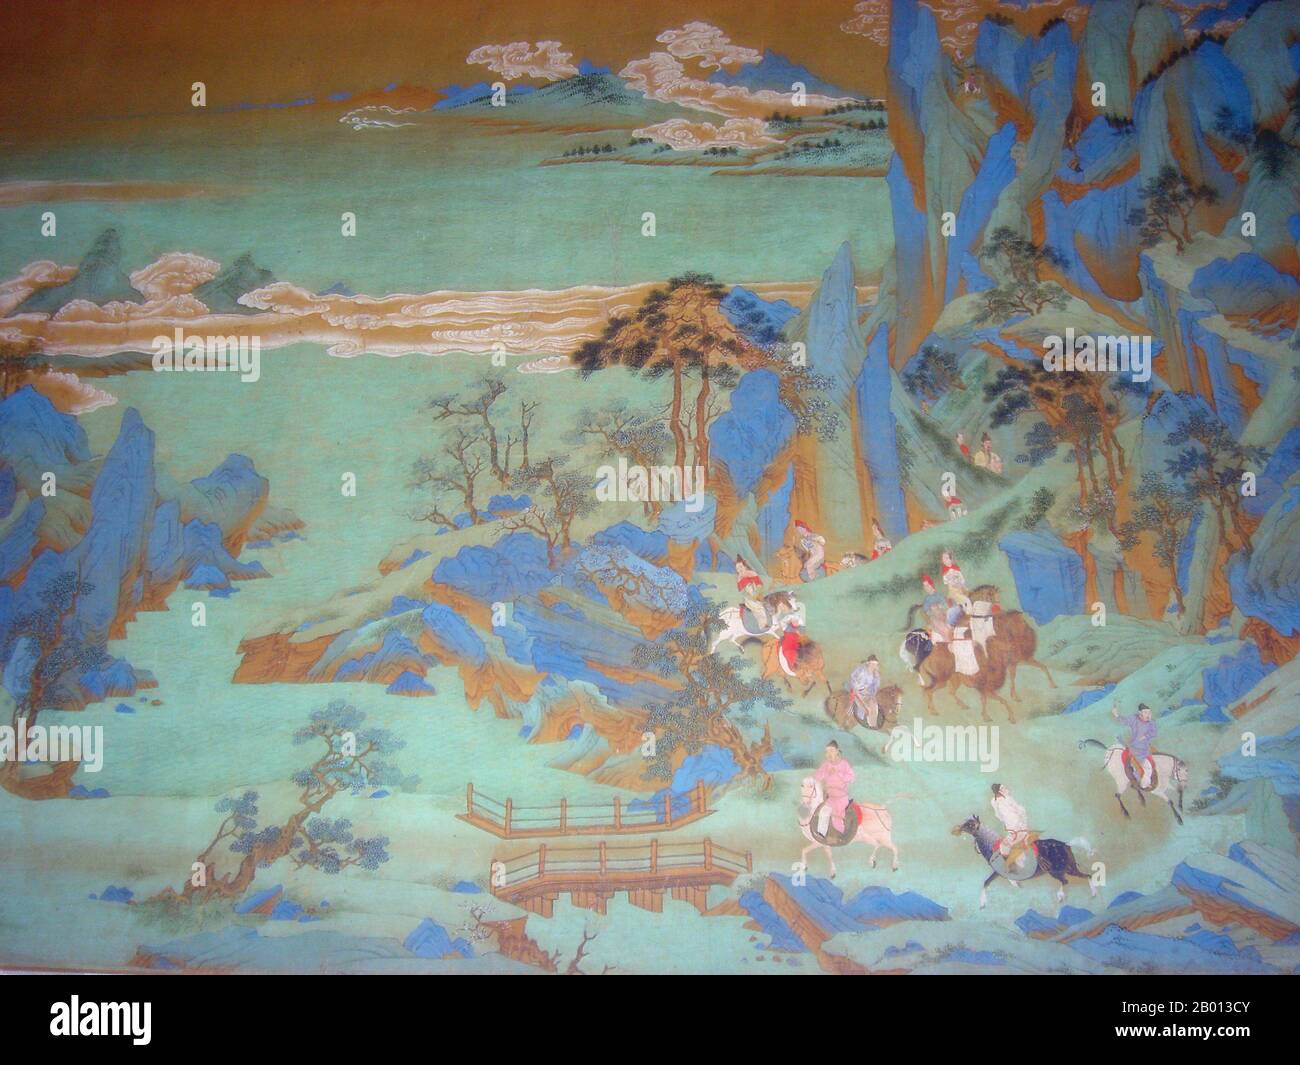 Cina: 'Viaggio a Shu'. Particolare della pittura a mano di Qiu Ying (1494-1552), 16 ° secolo. Questa sezione di una pittura a mano molto più grande della dinastia Ming (1368-1644) su seta mostra Tang Minghuang, o imperatore Xuanzong di Tang (685-762), in fuga dalla capitale Chang'an e la violenza della ribellione An Shi che ha cominciato nell'anno 756 durante la dinastia di metà Tang. Foto Stock